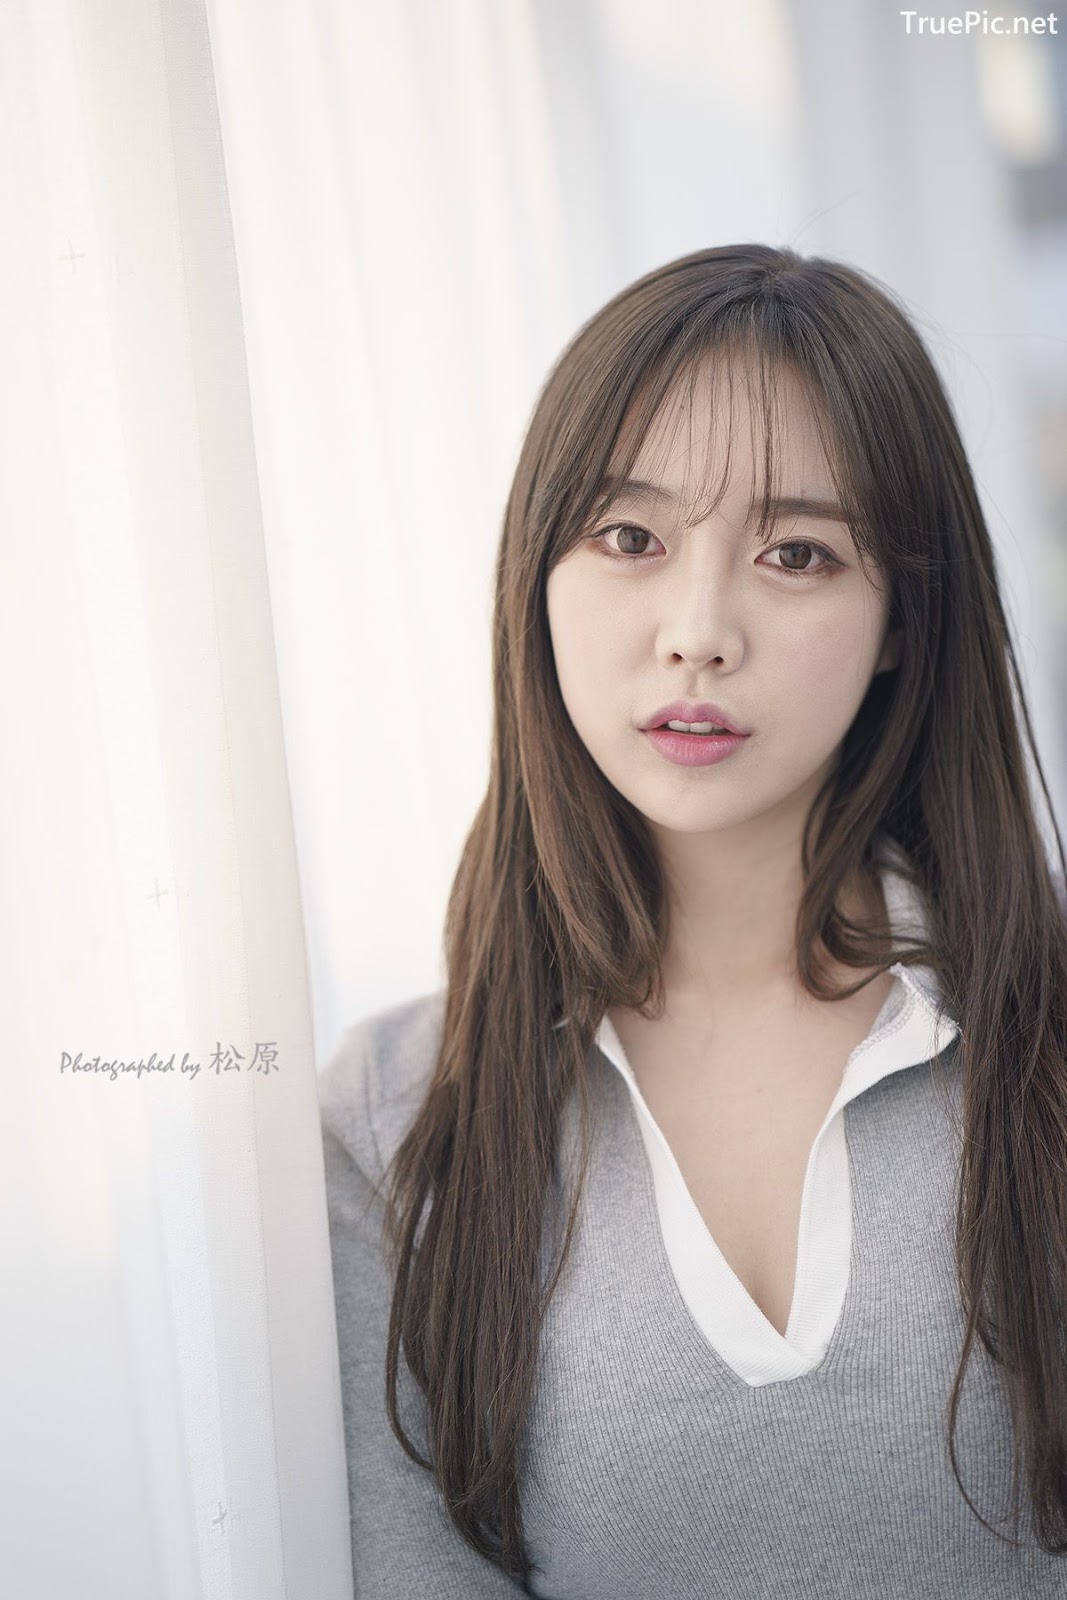 Image-Korean-Hot-Model-Go-Eun-Yang-Indoor-Photoshoot-Collection-TruePic.net- Picture-60